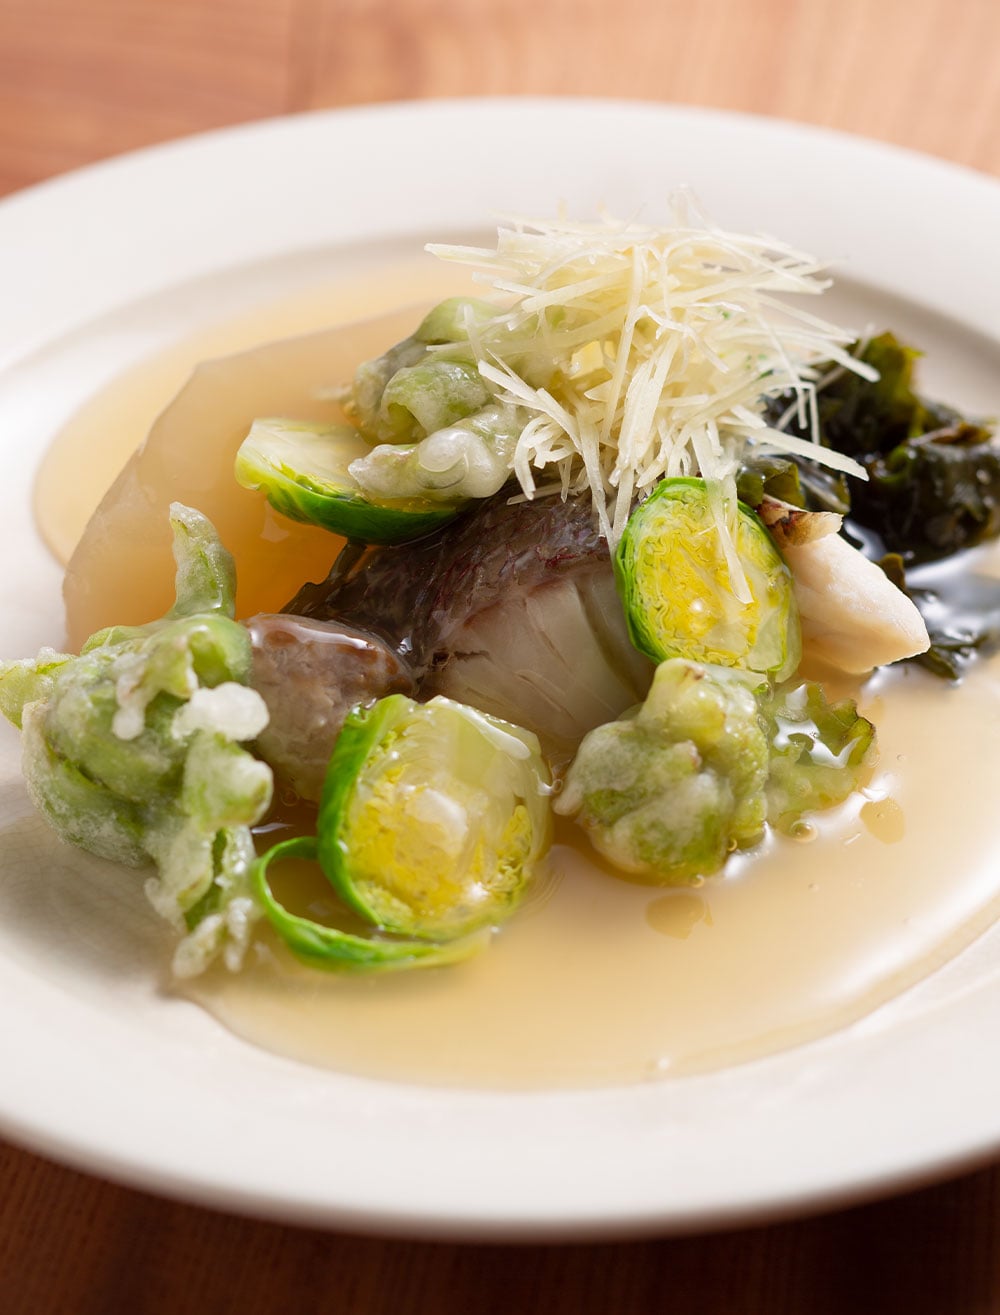 “MORI お魚のセット”2,600円のメインとなる魚料理は丹後の天然鯛の酒蒸し。内容は季節で変わる。